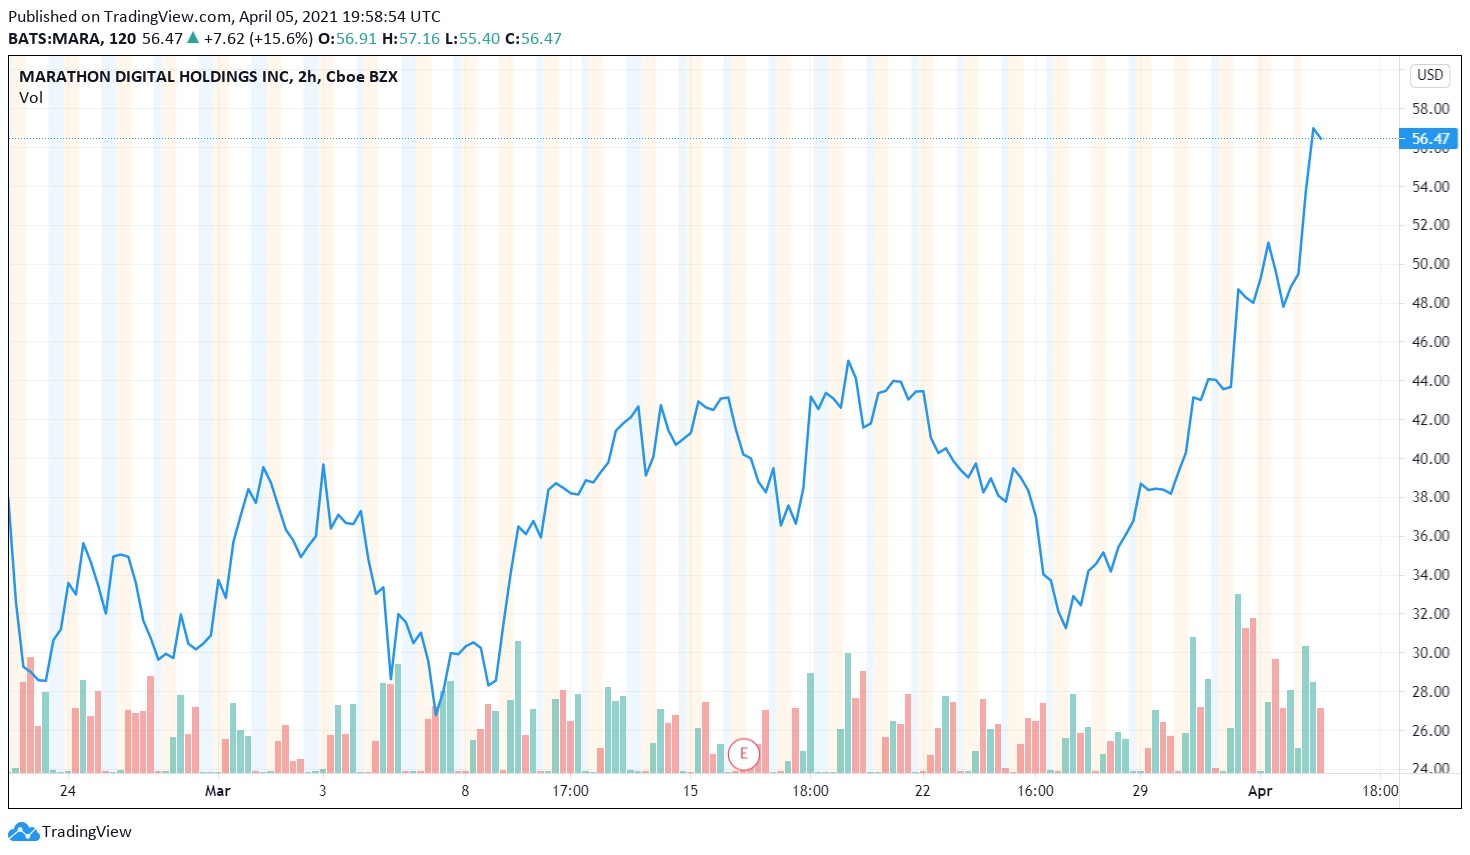 قیمت سهام ماراتن - رشد 17 درصدی سهام کمپانی "ماراتون دیجیتال" بعد از افزایش ظرفیت استخراج